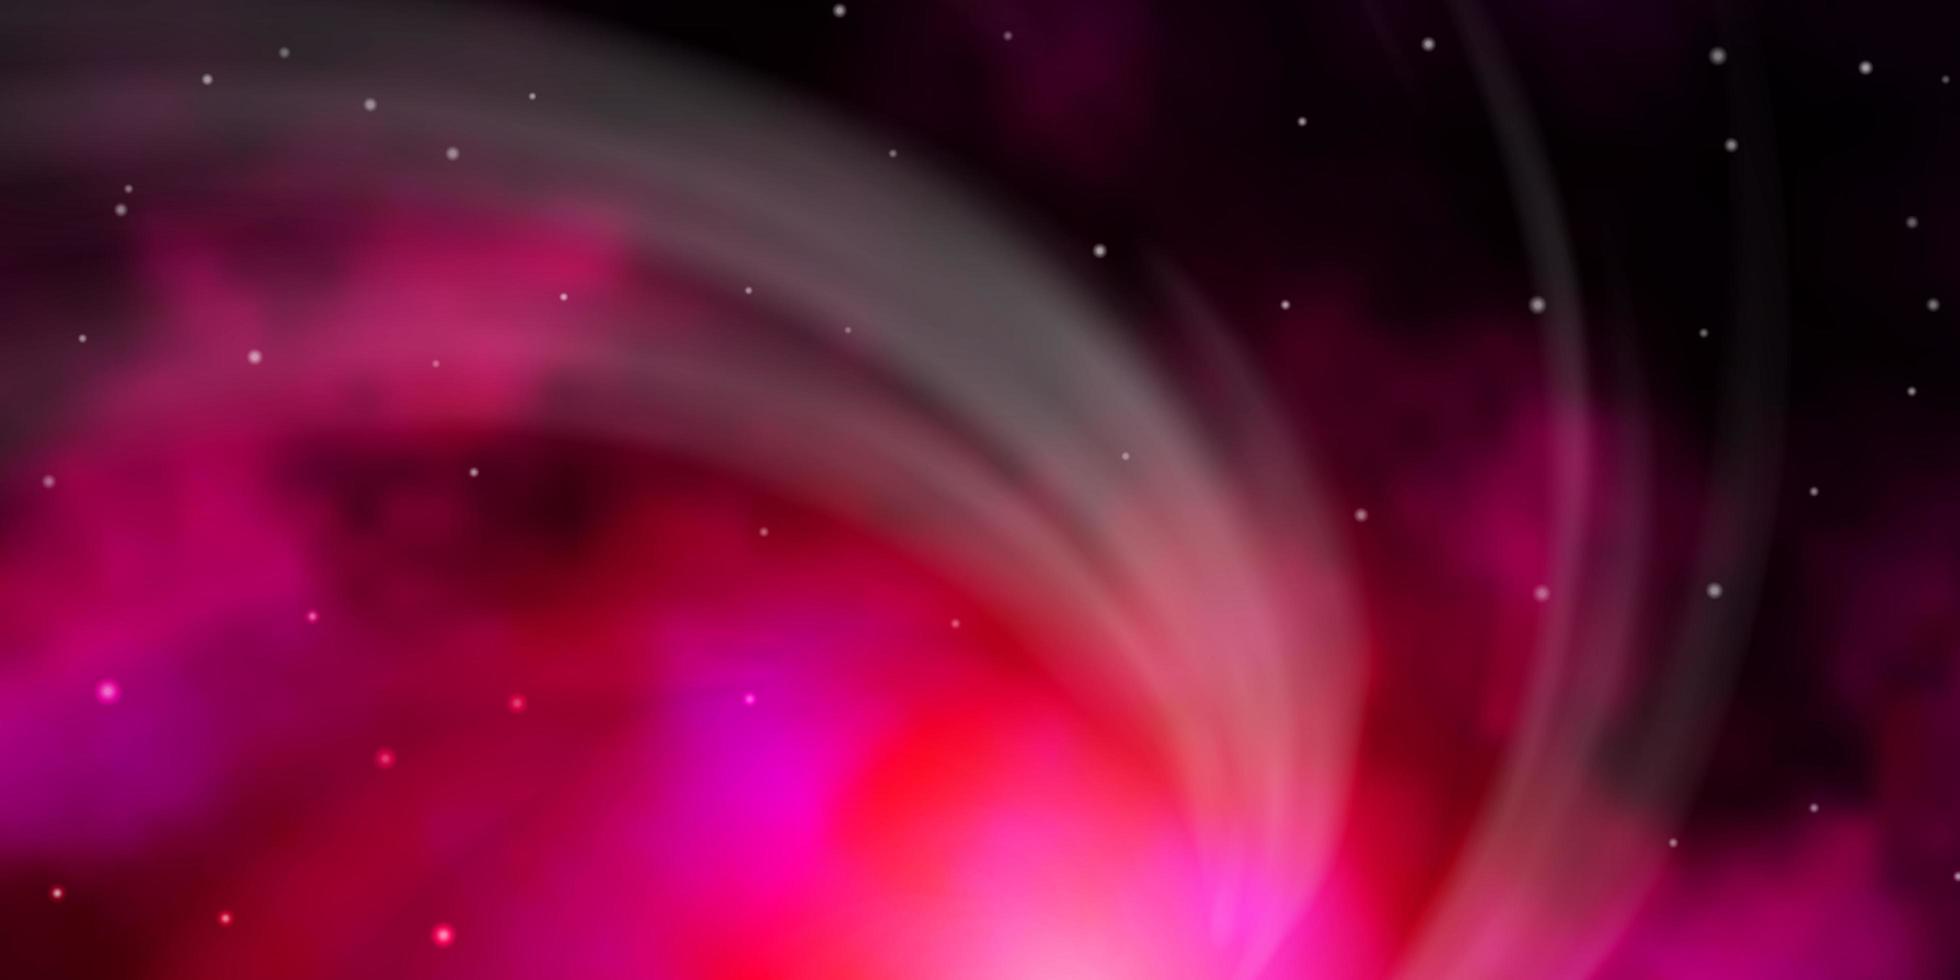 Fondo de vector rosa oscuro con estrellas de colores.